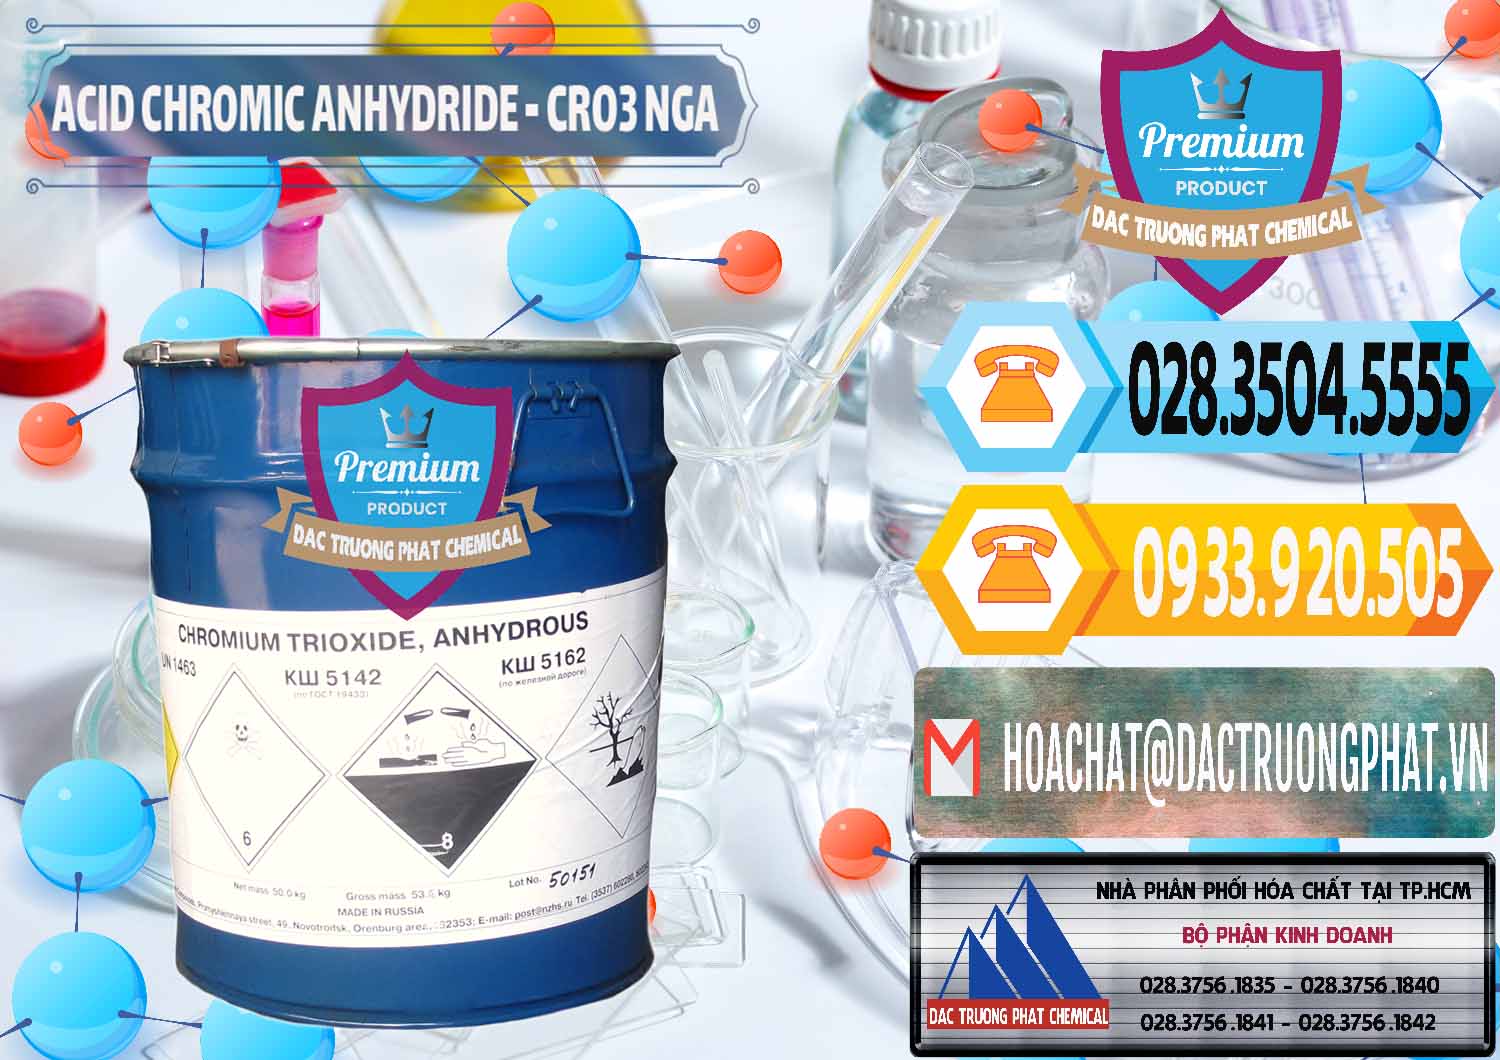 Công ty chuyên phân phối và bán Acid Chromic Anhydride - Cromic CRO3 Nga Russia - 0006 - Chuyên cung cấp ( phân phối ) hóa chất tại TP.HCM - hoachattayrua.net